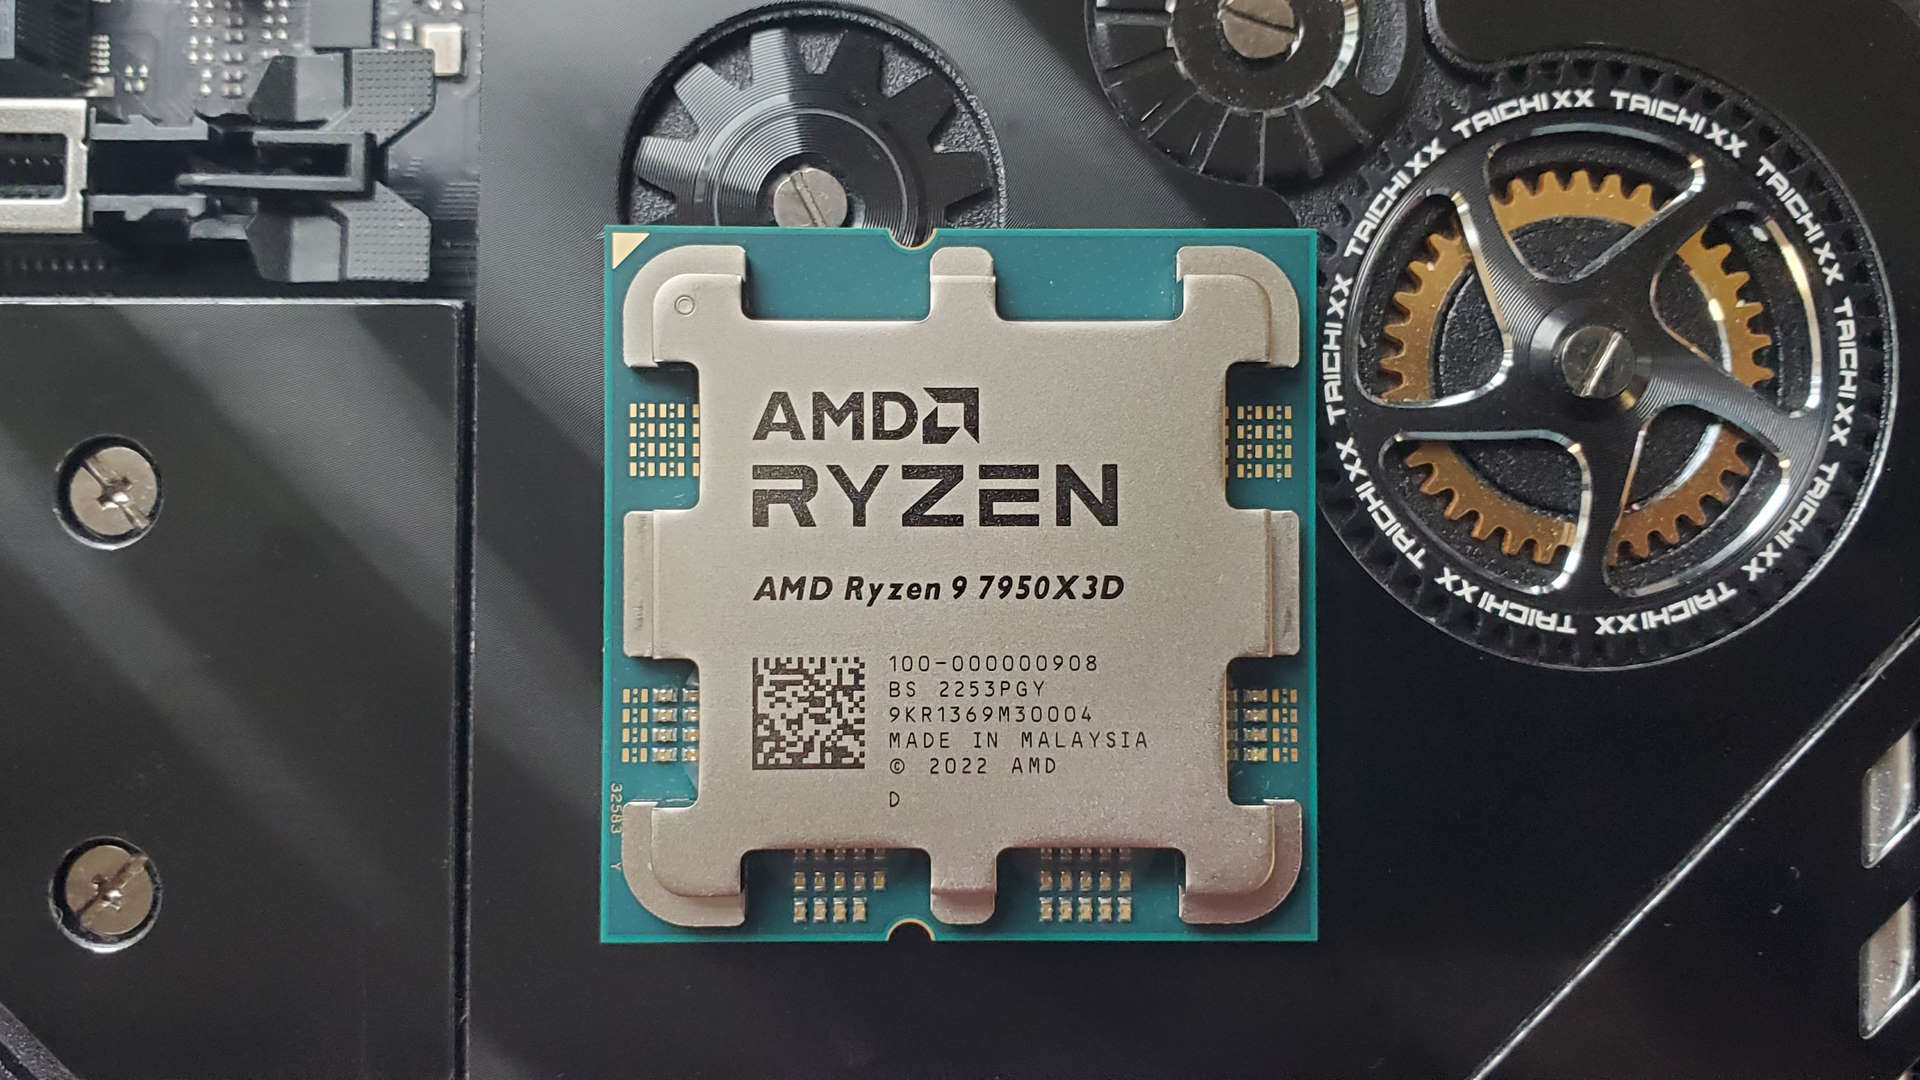 AMD Ryzen 9 7950X3D CPU: Powerful, but Not a Must-Buy